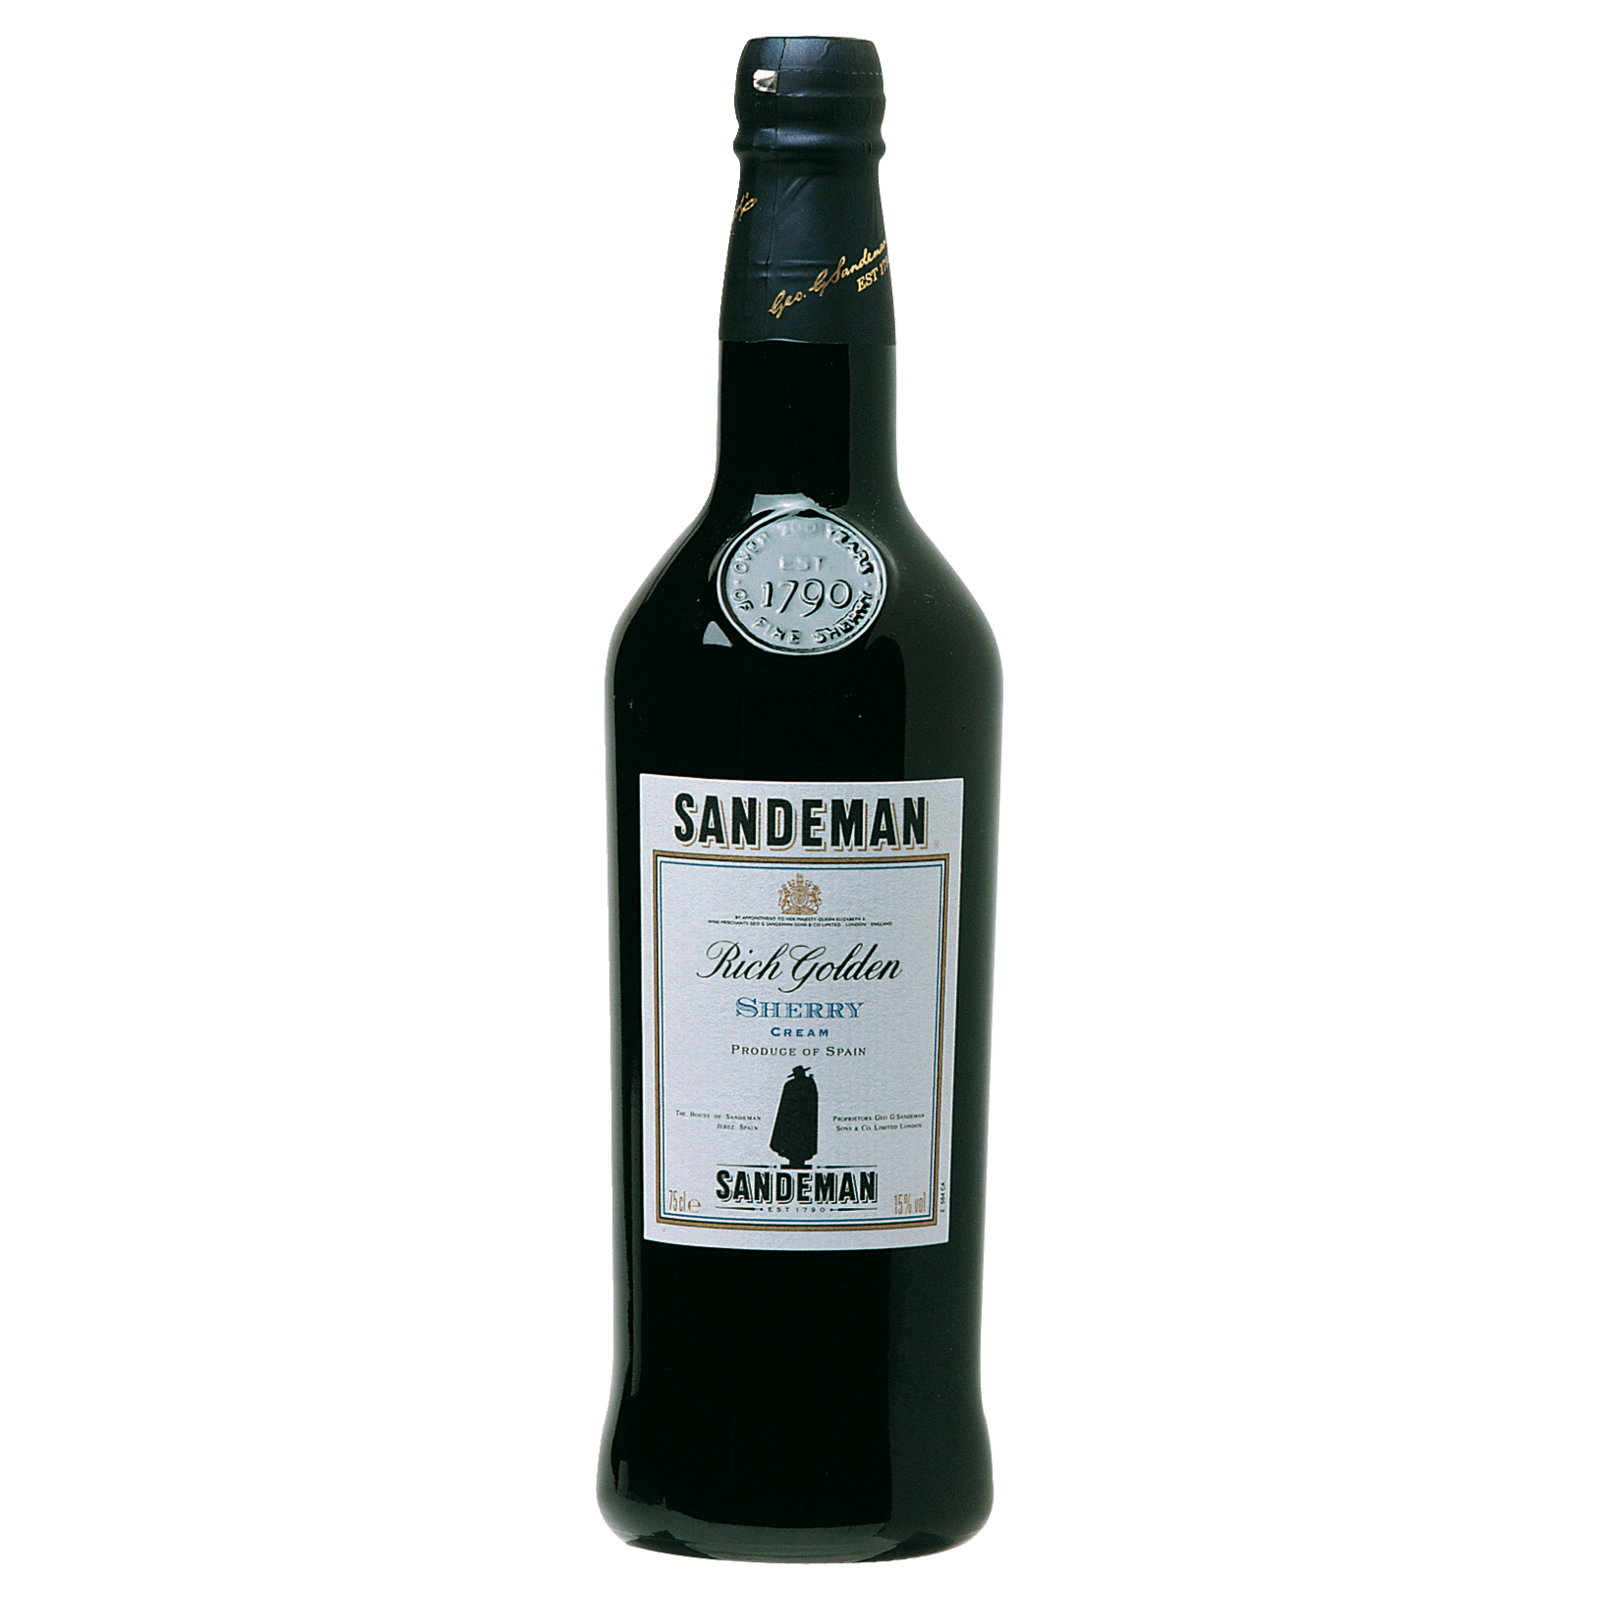 POP von 5,99€ Patras lieblich, Lidl Mavrodaphne Likörwein für